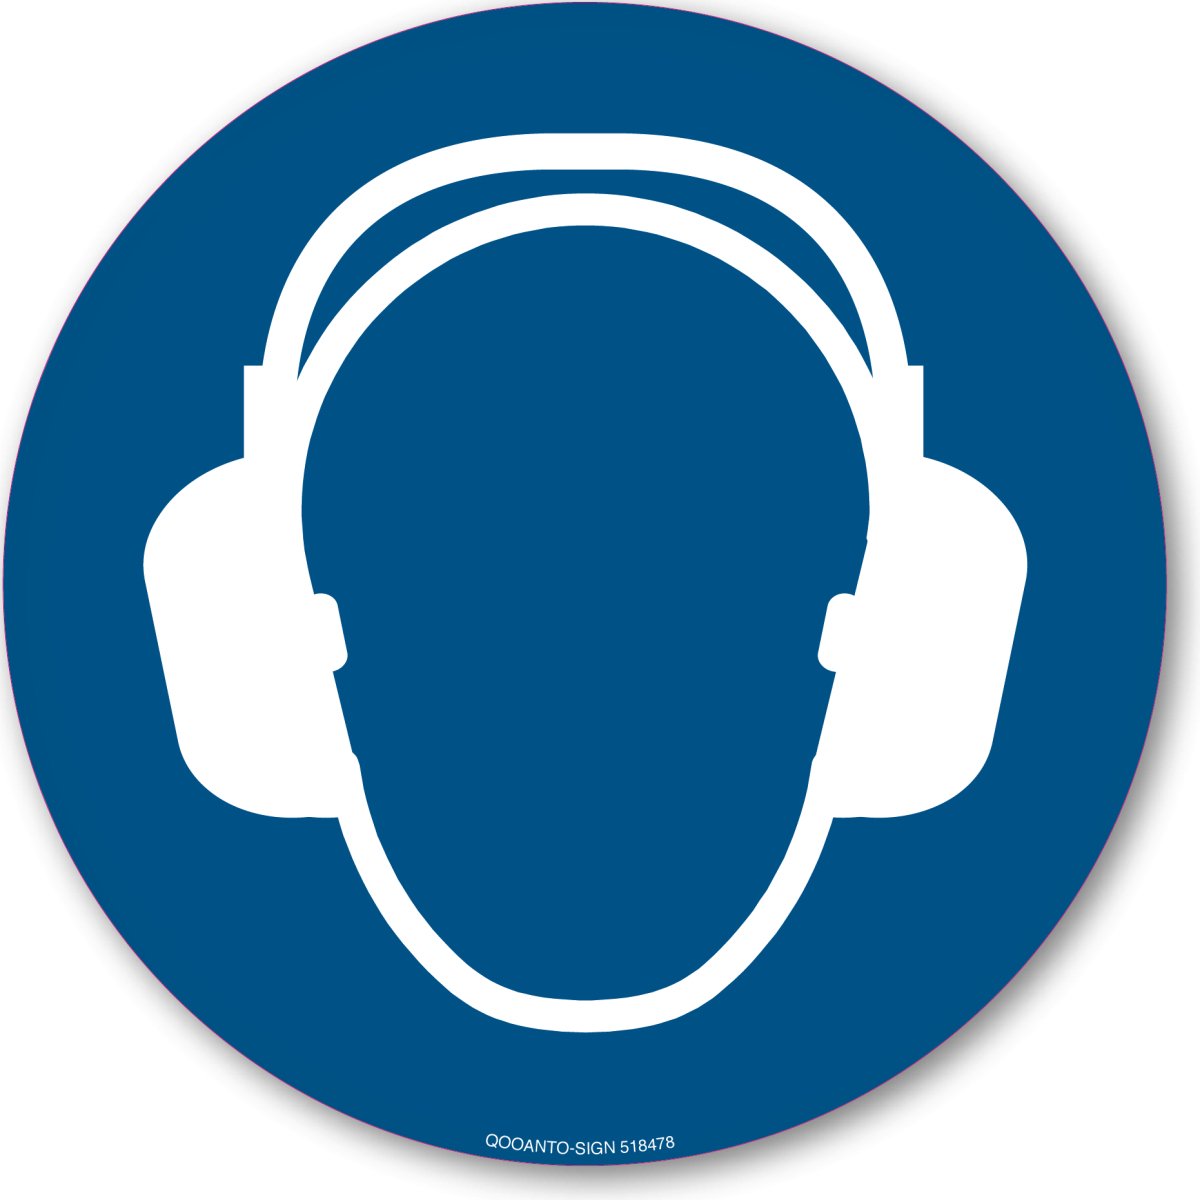 Gehörschutz Benutzen, EN ISO 7010, M003 Gebotsschild oder Aufkleber aus Alu-Verbund oder Selbstklebefolie mit UV-Schutz - QOOANTO-SIGN